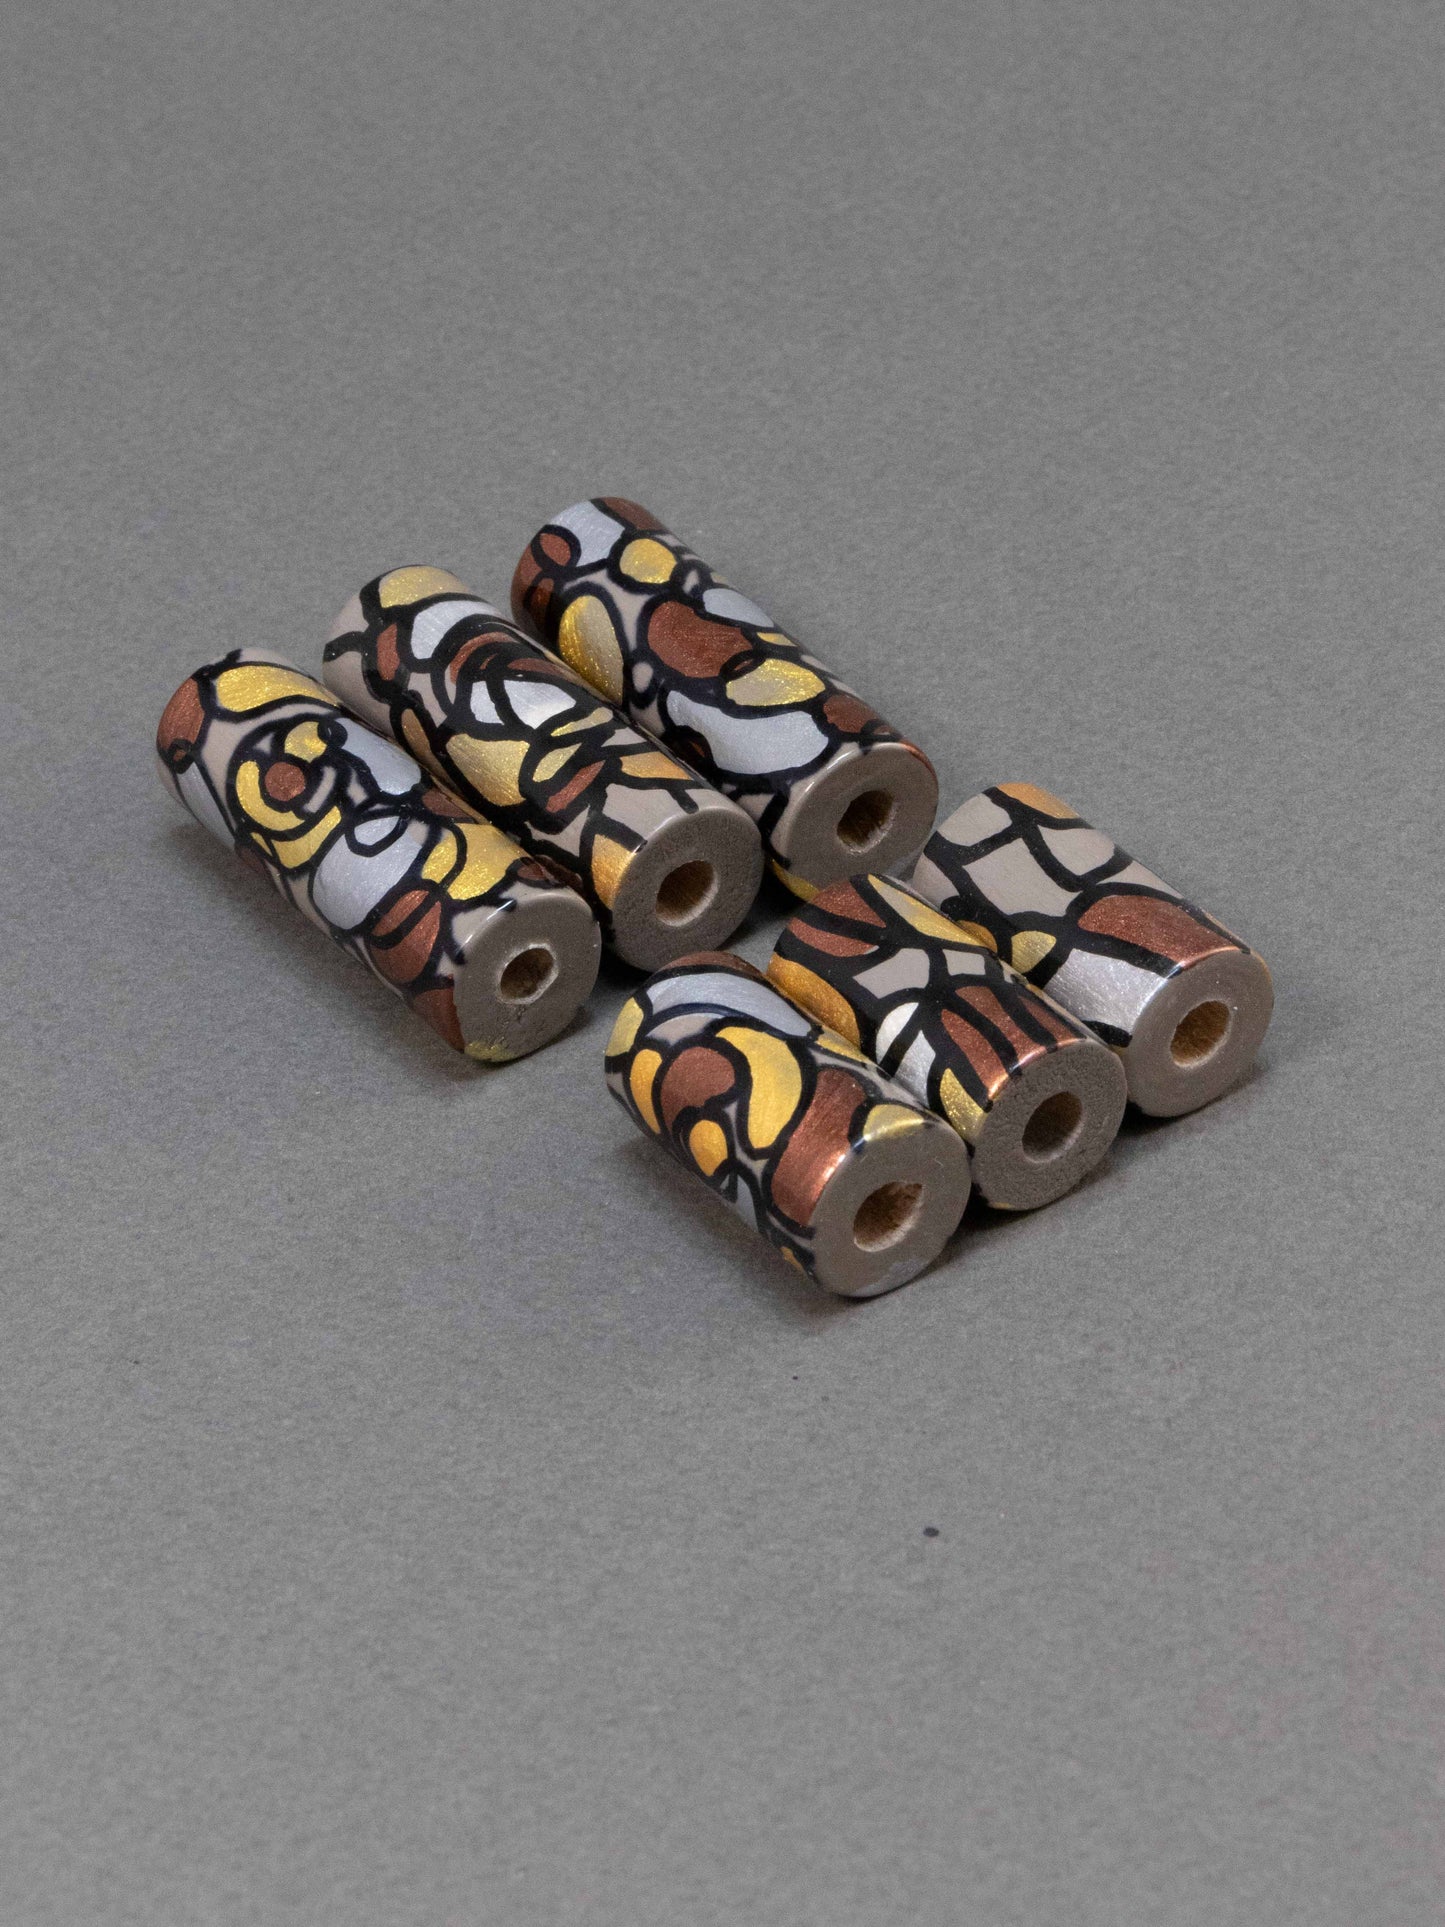 Vienna Wooden Bead in Cylinder Shape